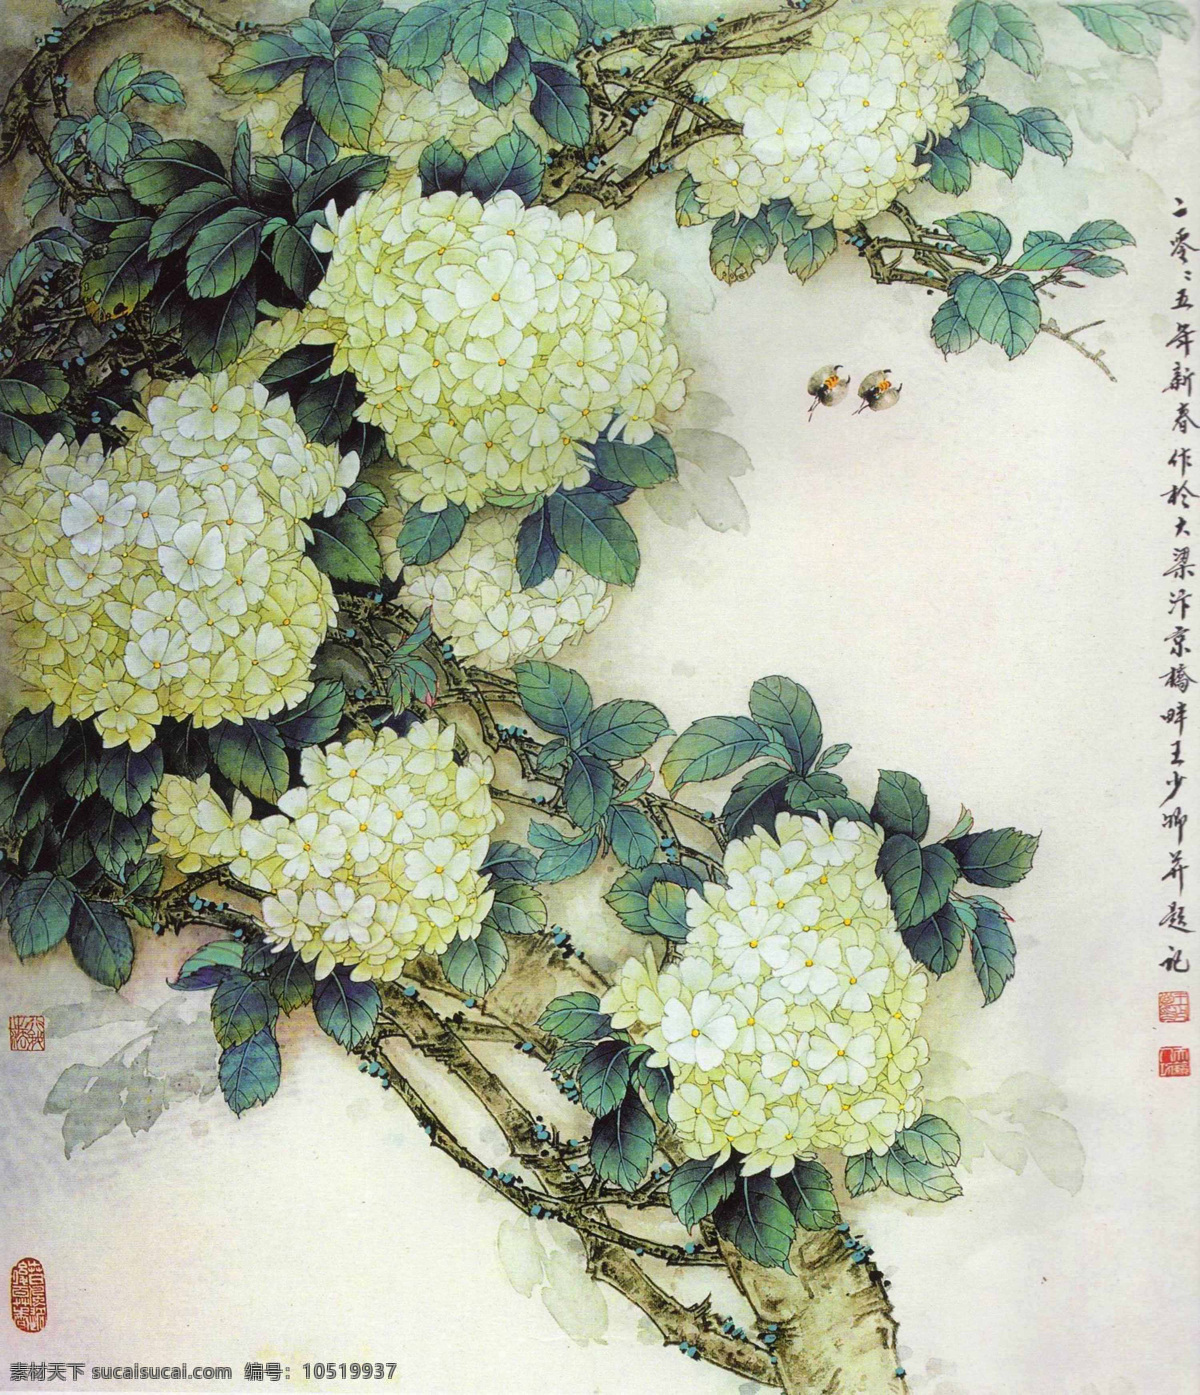 白花 花 蜂 绿叶 国画 工笔 王少卿 绘画 高清 大图 艺术 传统文化 绘画书法 文化艺术